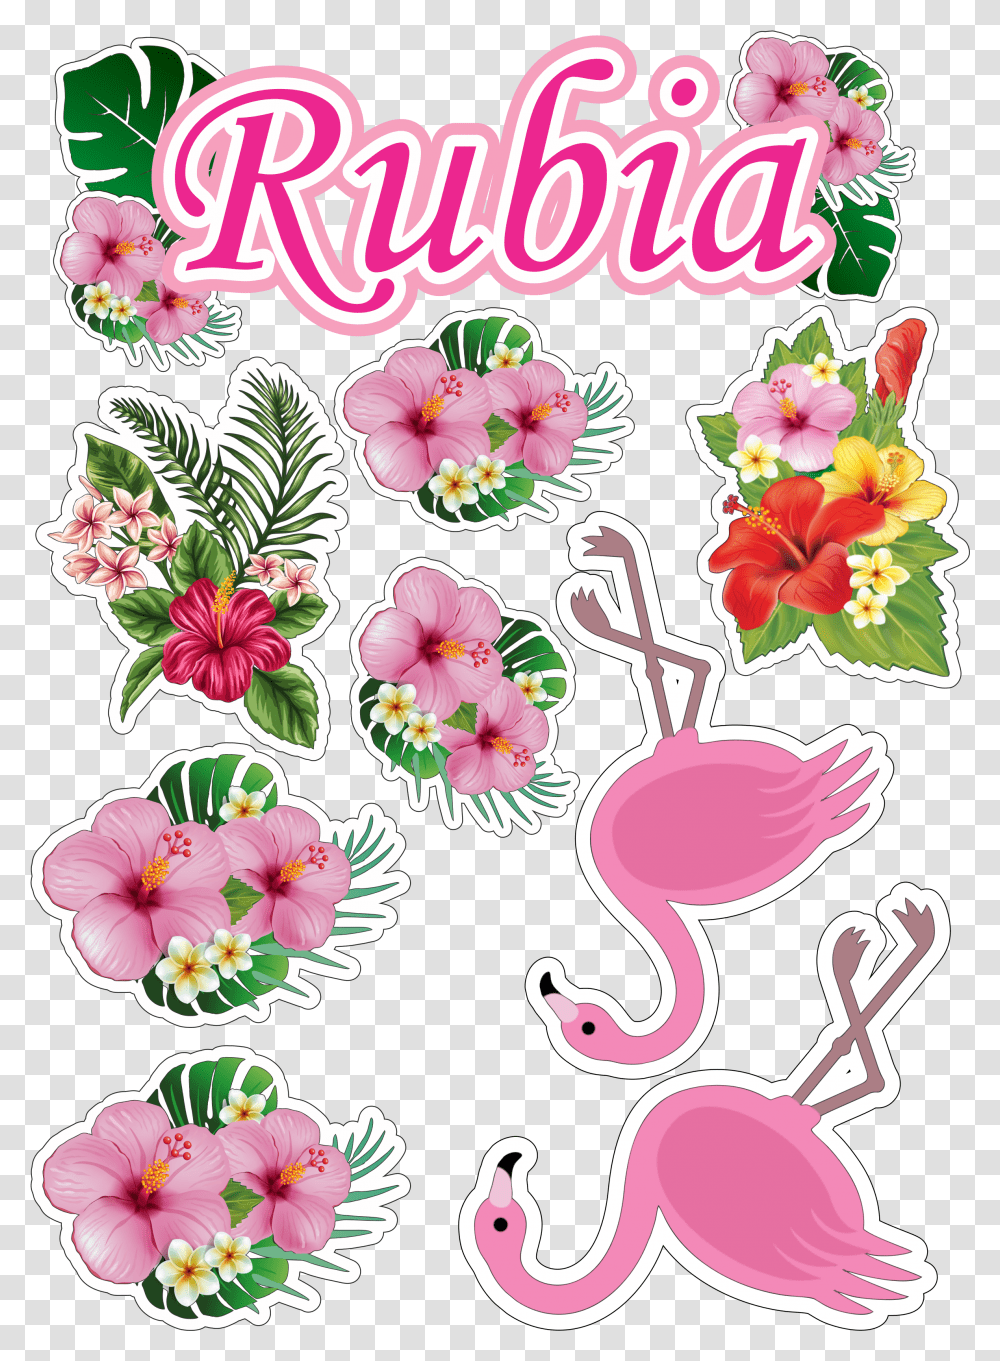 Topo De Bolo Topper Do Flamingo Para Imprimir, Floral Design, Pattern Transparent Png